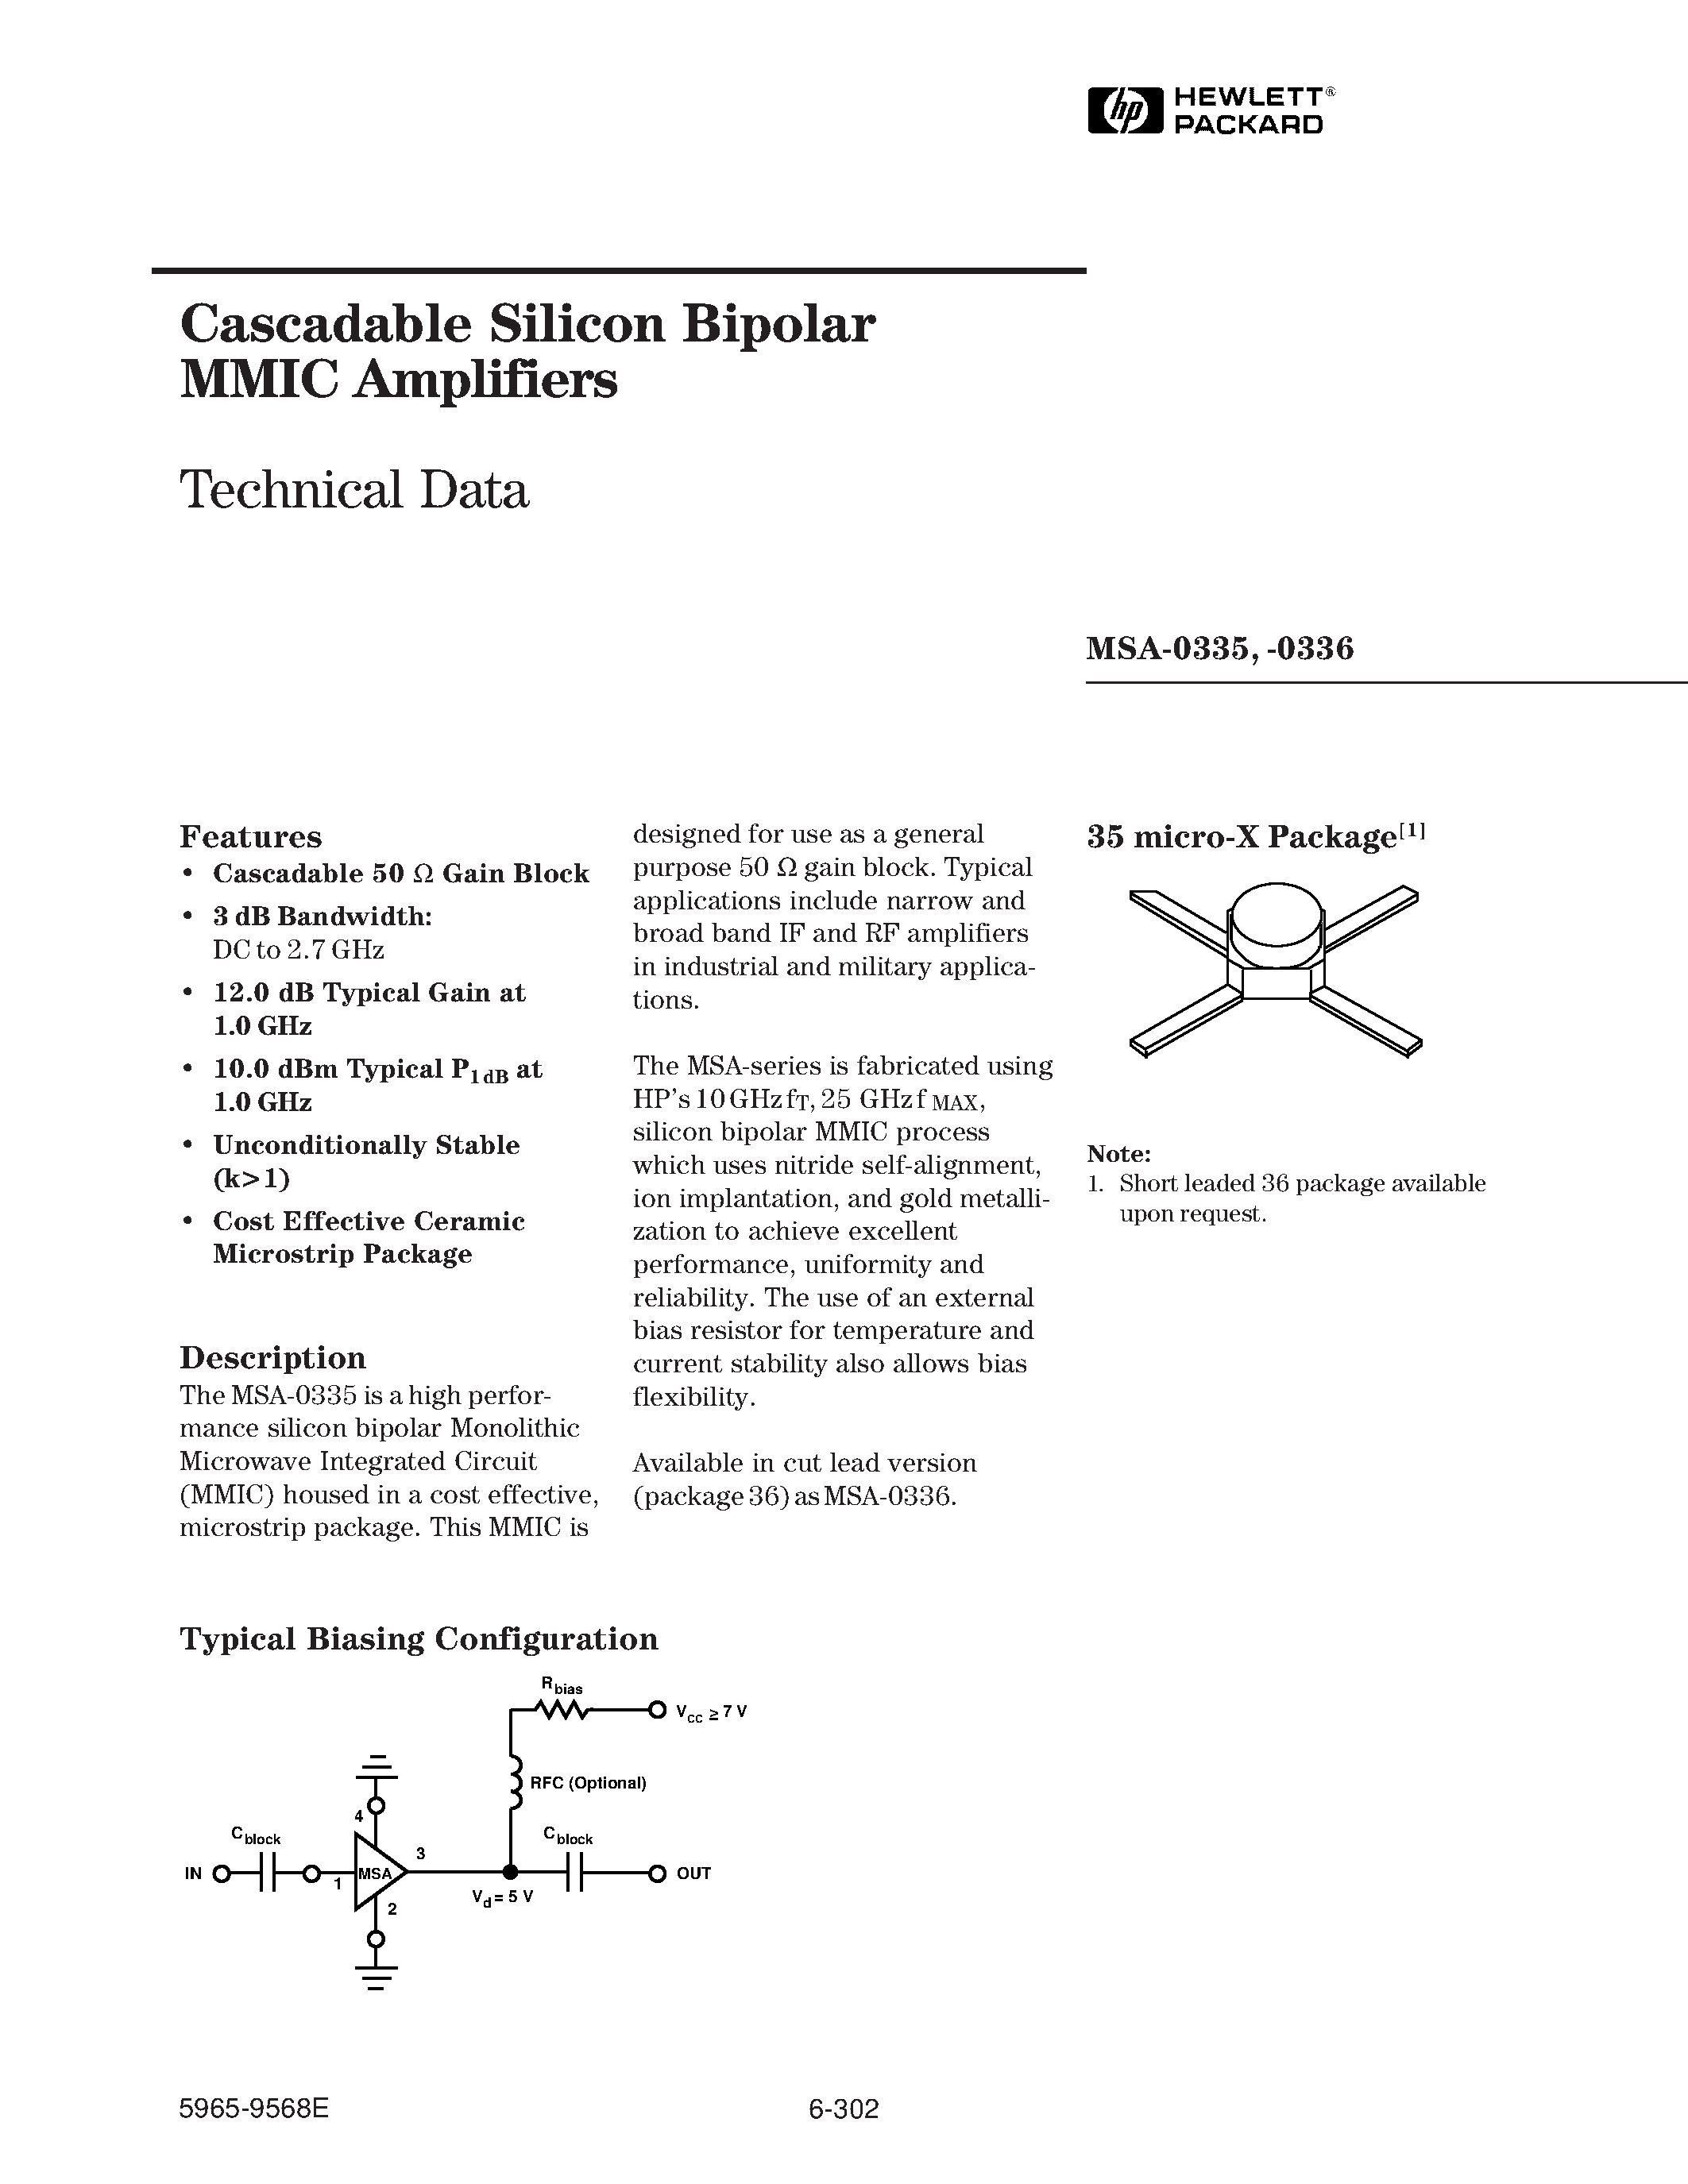 Даташит MSA-0335-(MSA-0335 / MSA-0336) Cascadable Silicon Bipolar MMIC Amplifier страница 1